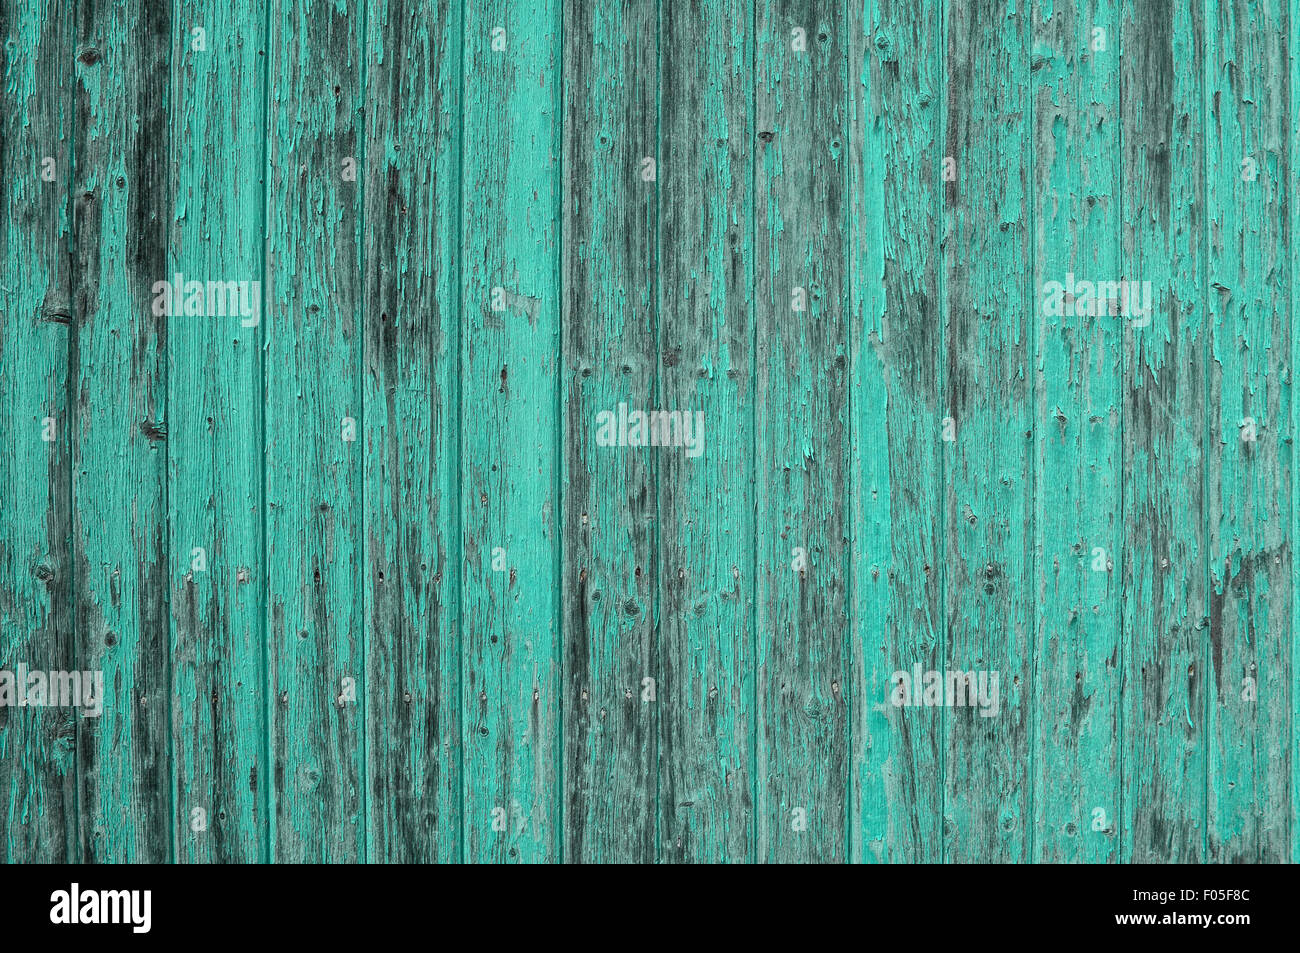 Hölzerne Türkis farbigen Hintergrund. Abstrakte rustikale Oberfläche. Blau grün shabby chic Tapete Textur Stockfoto